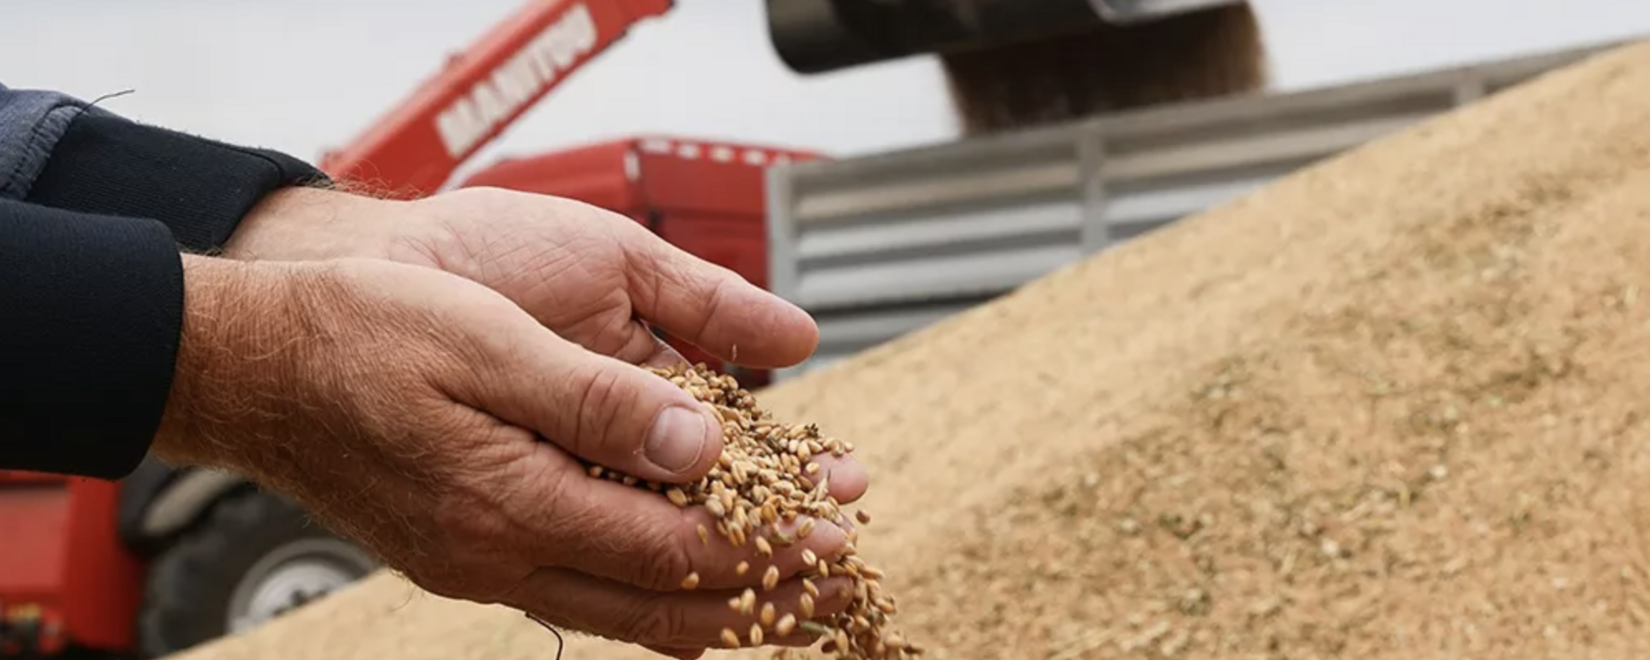 Закупки зерна в госфонд растут. В среду закуплено более 19 тыс. тонн